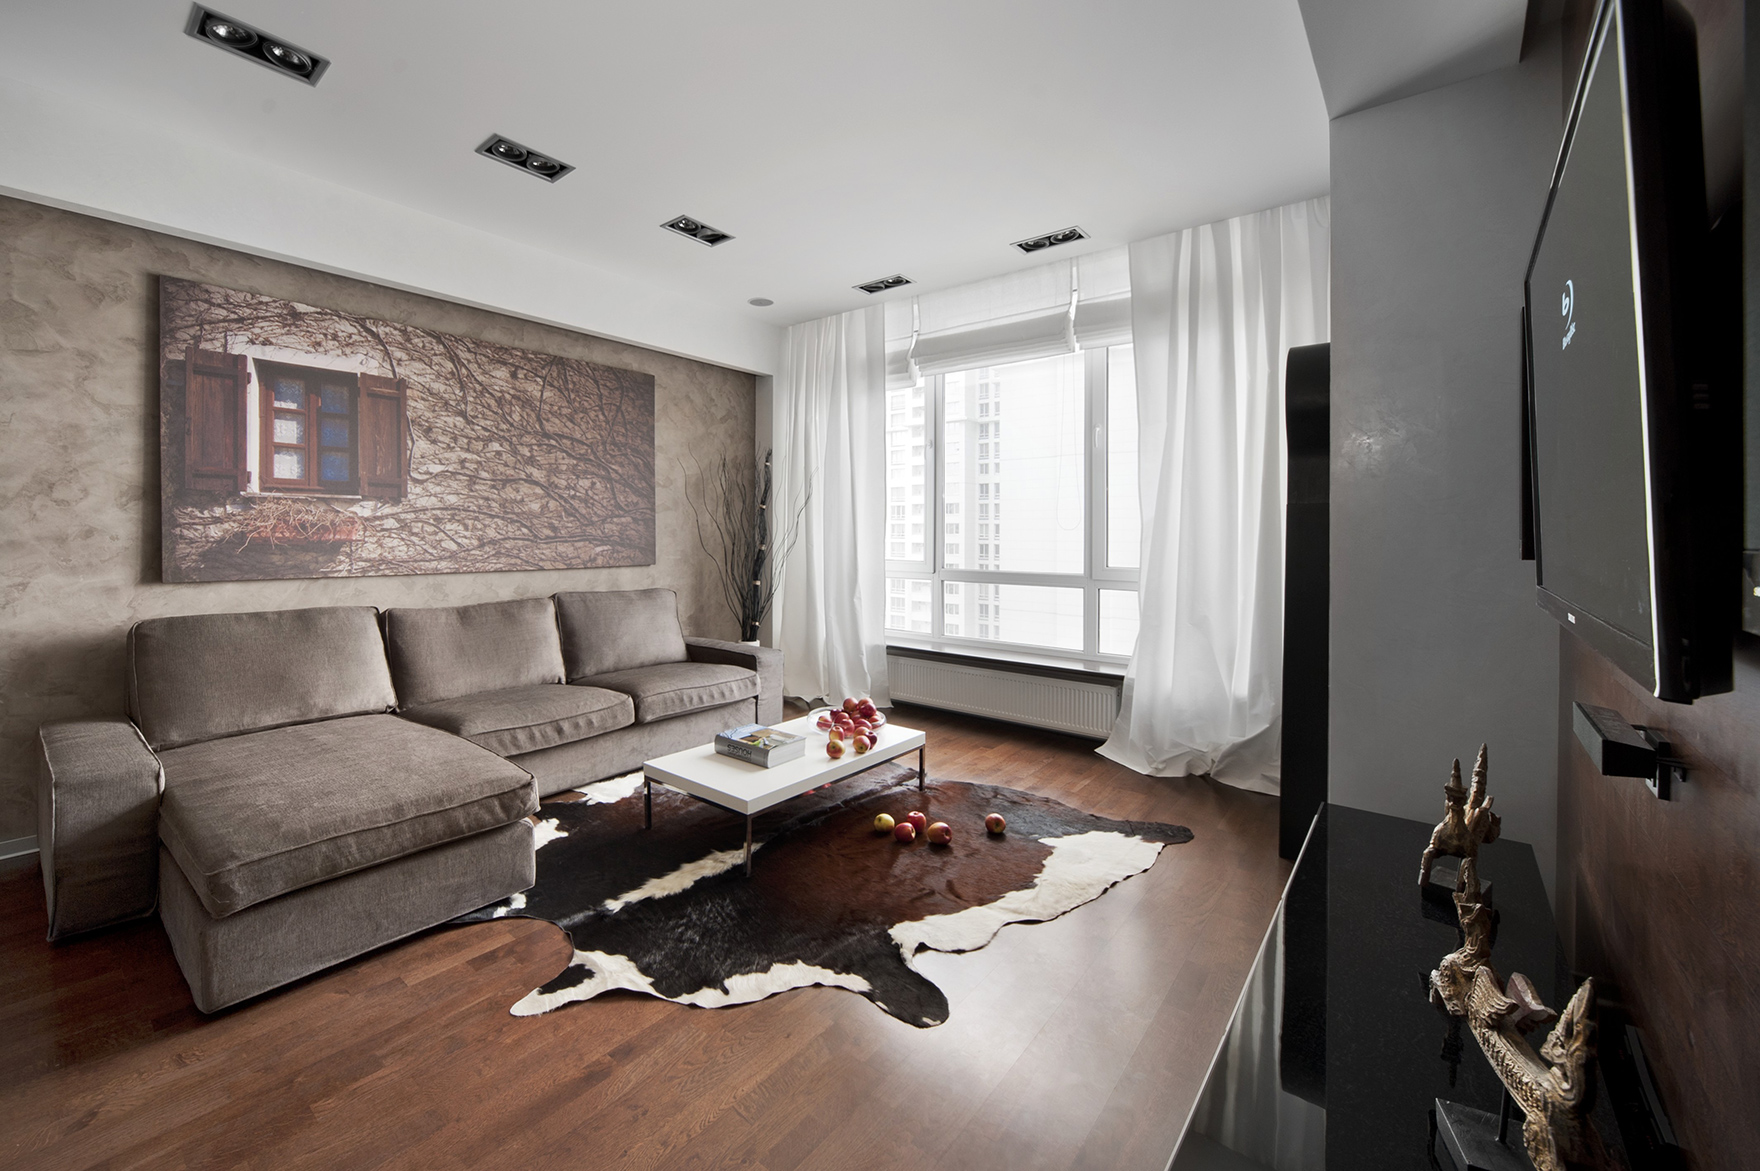 Дизайн интерьера квартиры фото 2 комнатной квартиры